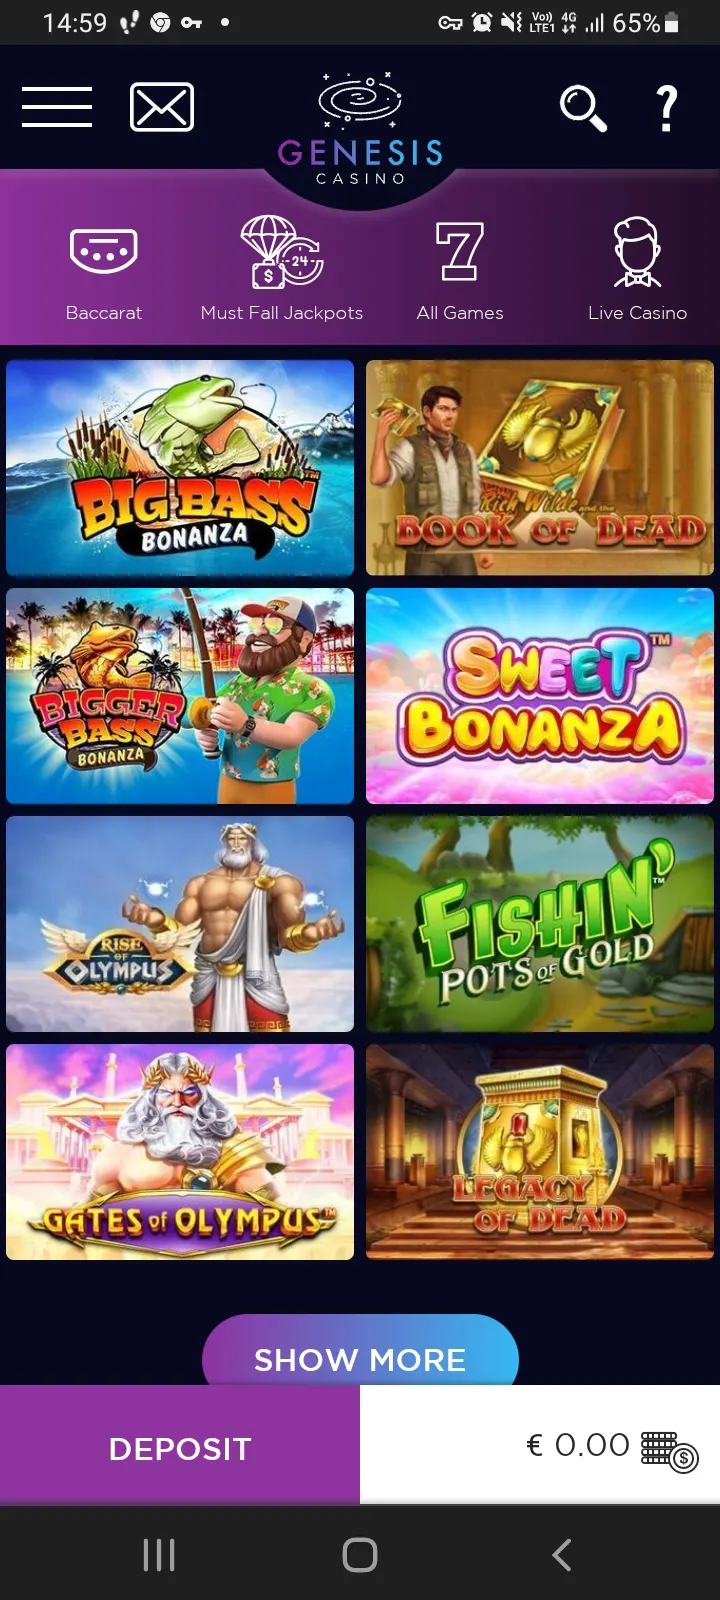 Genesis casino app screenshot 1